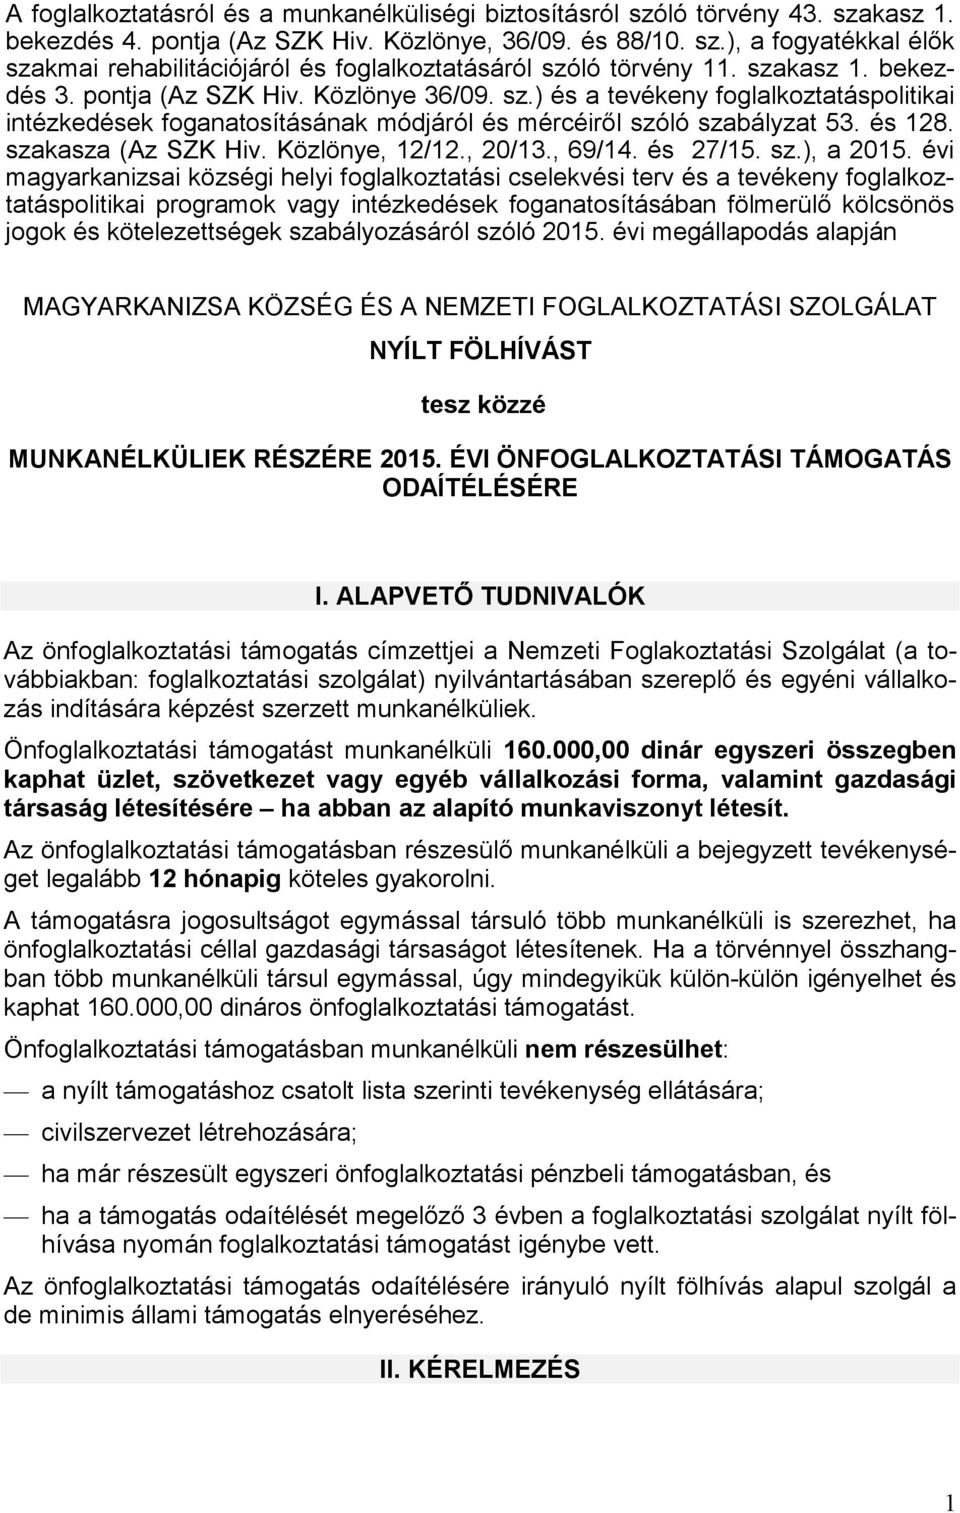 szakasza (Az SZK Hiv. Közlönye, 12/12., 20/13., 69/14. és 27/1. sz.), a 201.